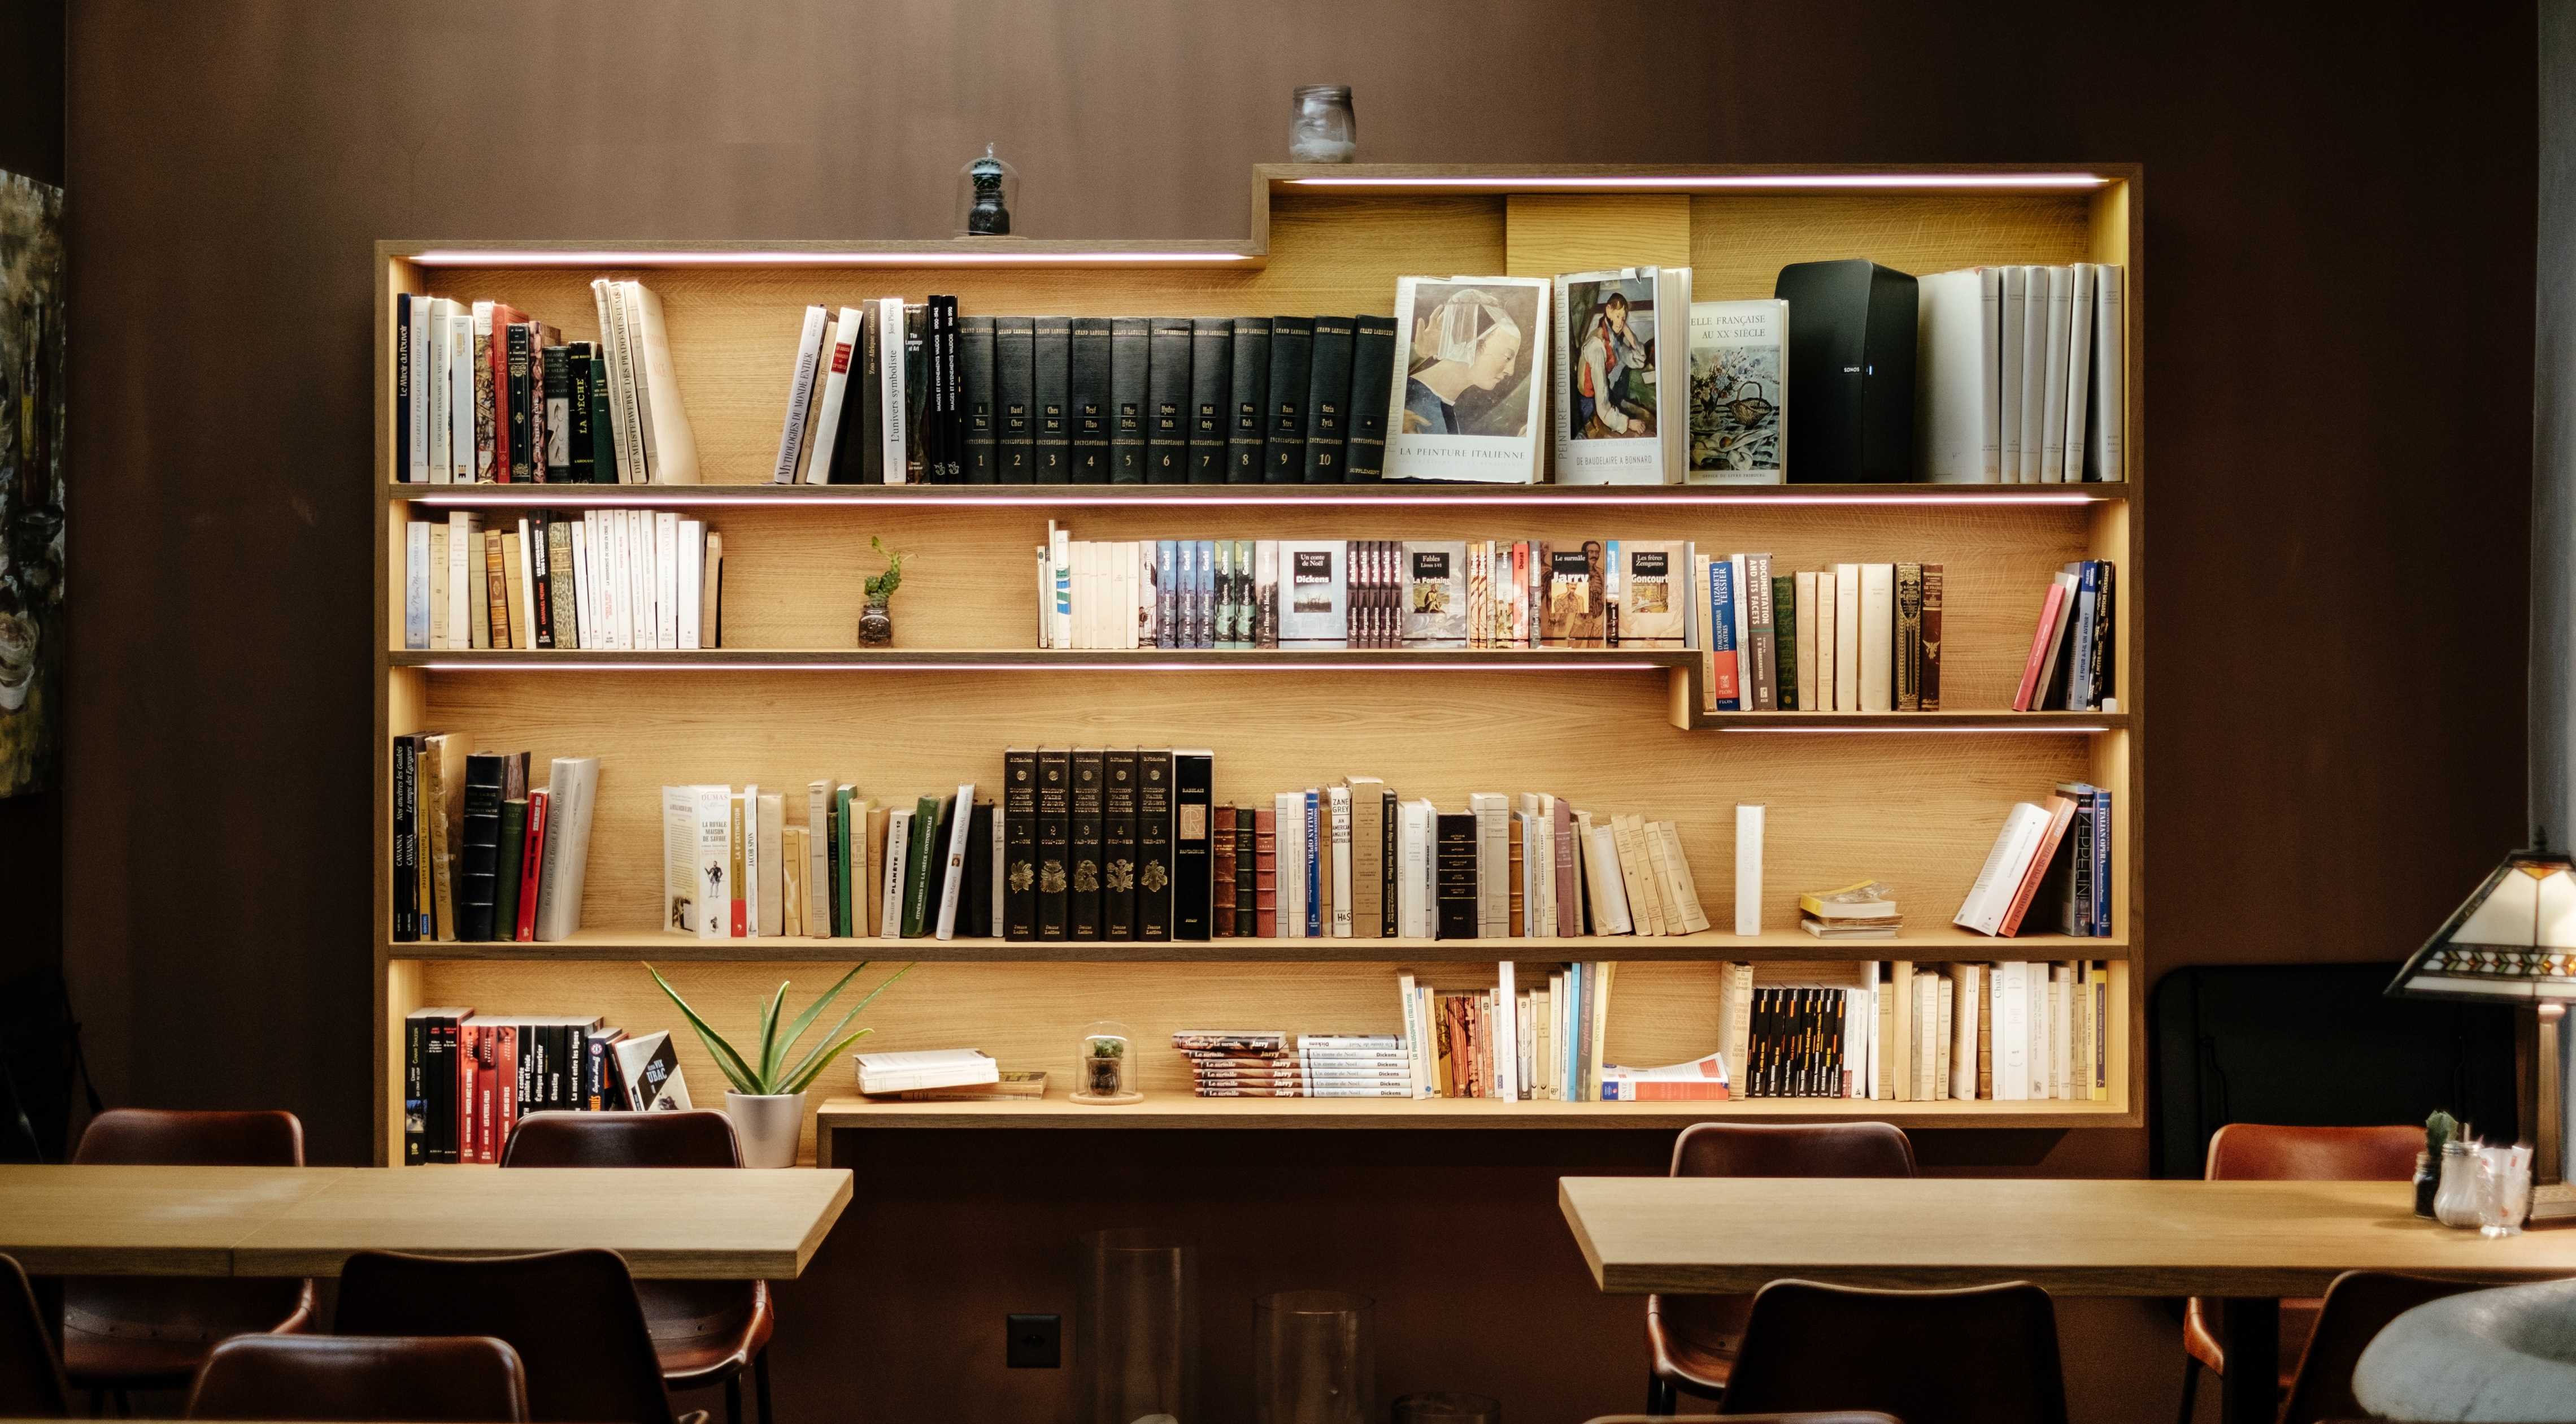 Bibliothek in Berlin mit Büchern über Design